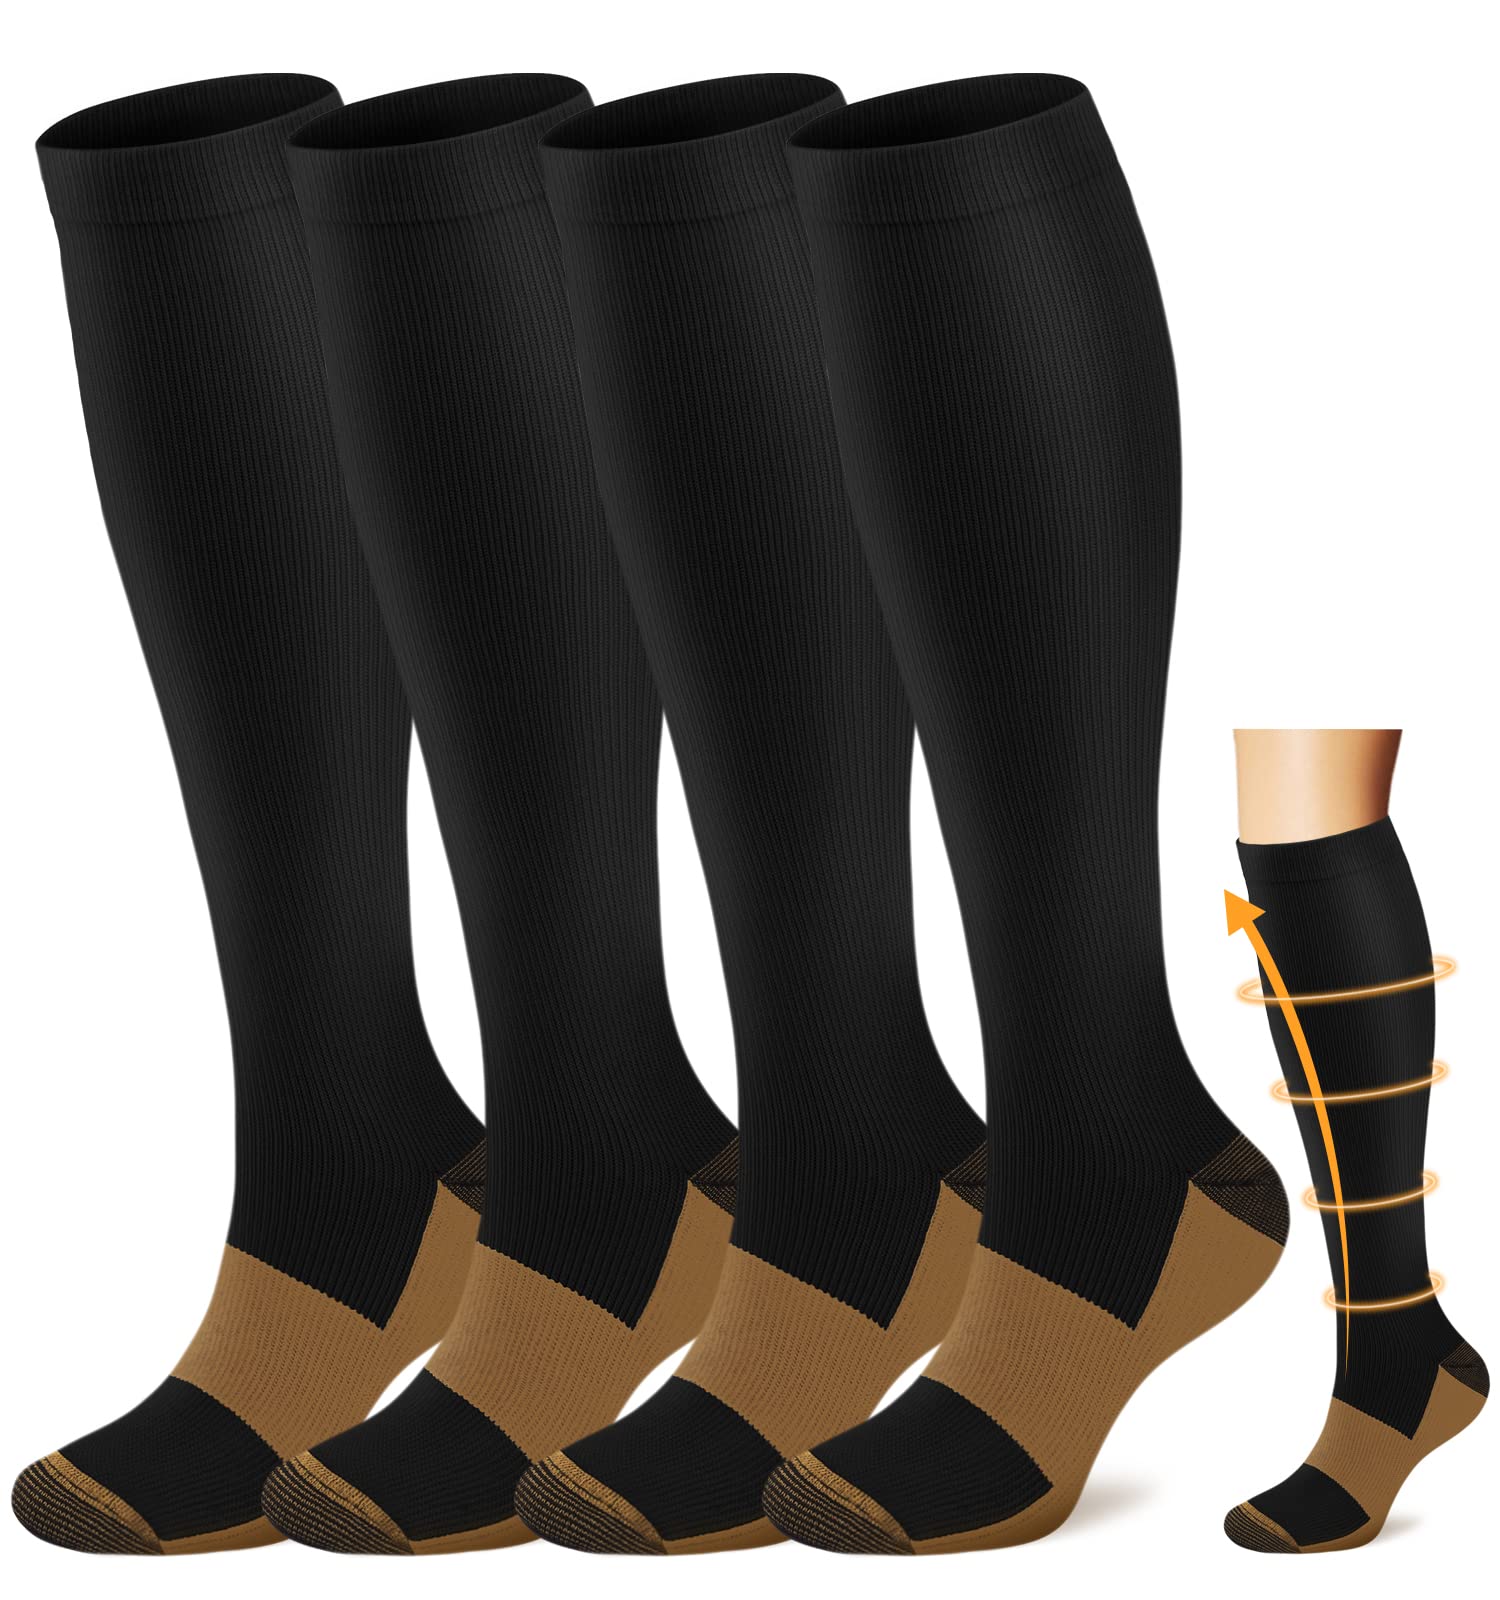 Best Compression Socks for Men & Women